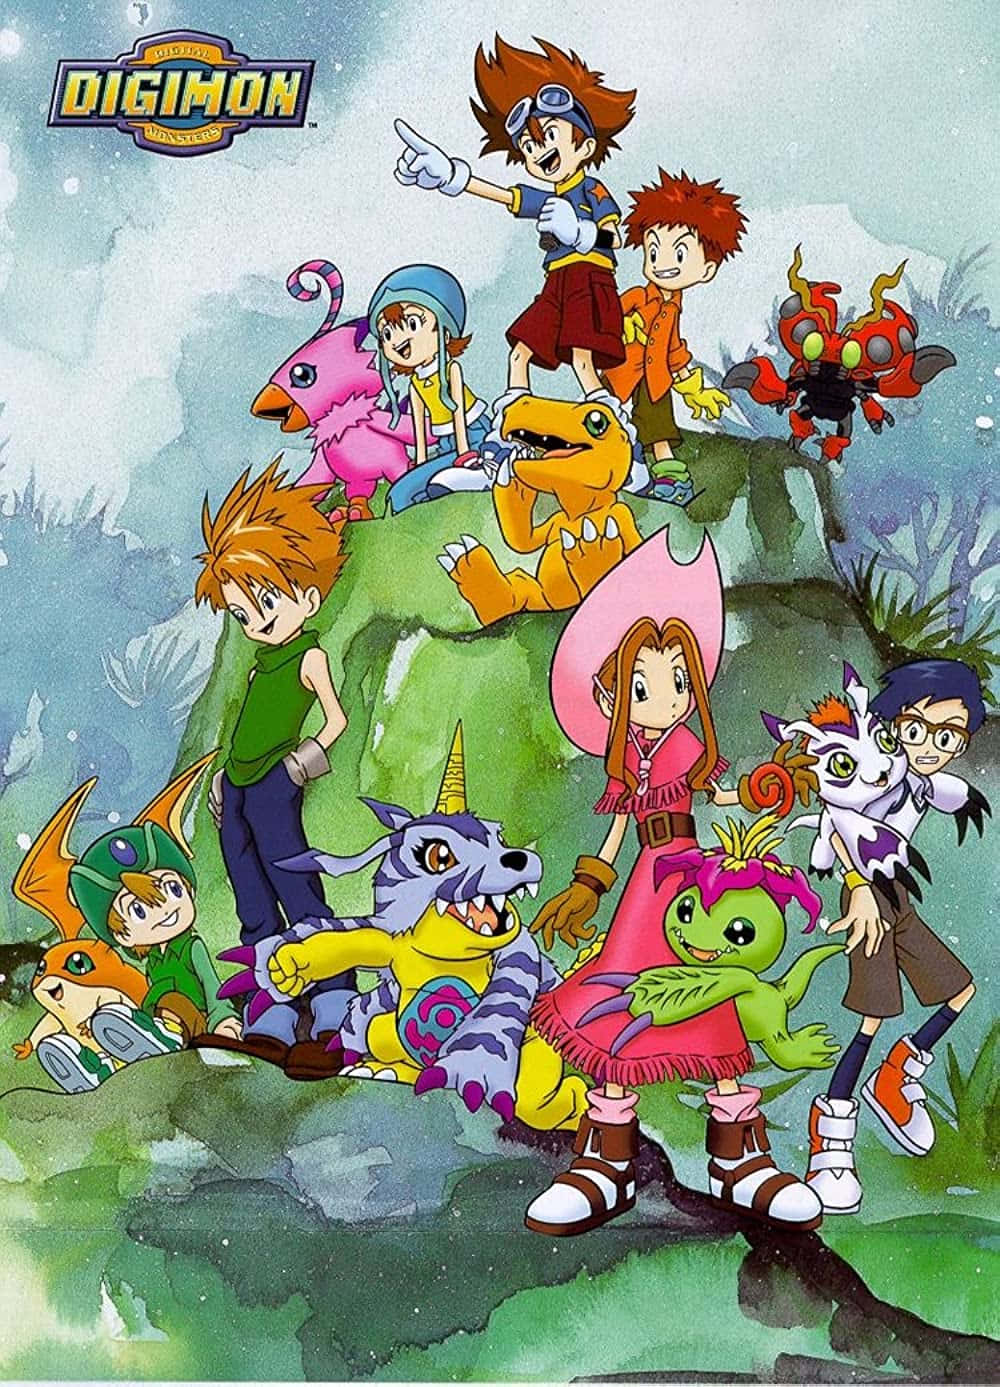 Del deltagelsen på eventyret - Digimonland - og mal dine laptop eller mobil vægge med de levende farver af Digimon universet!